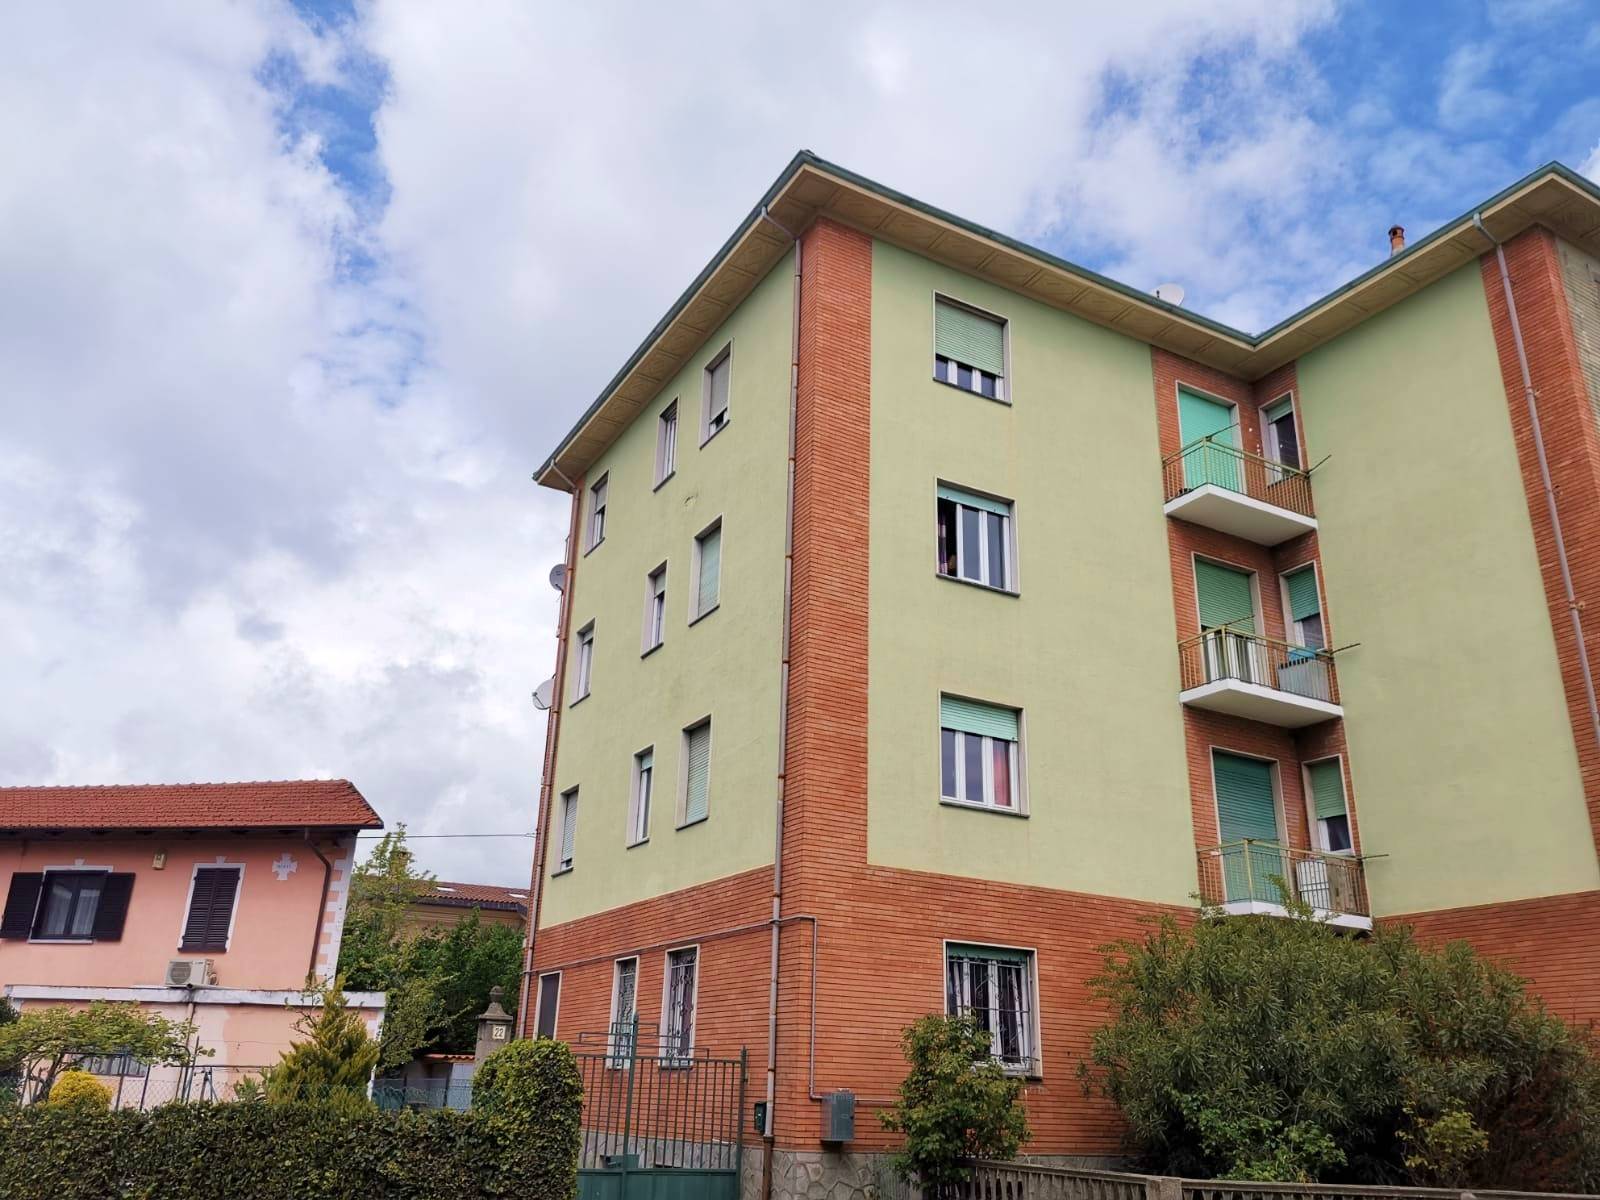 Appartamento in affitto a Orbassano, 3 locali, zona Località: ORBASSANO, prezzo € 420 | CambioCasa.it